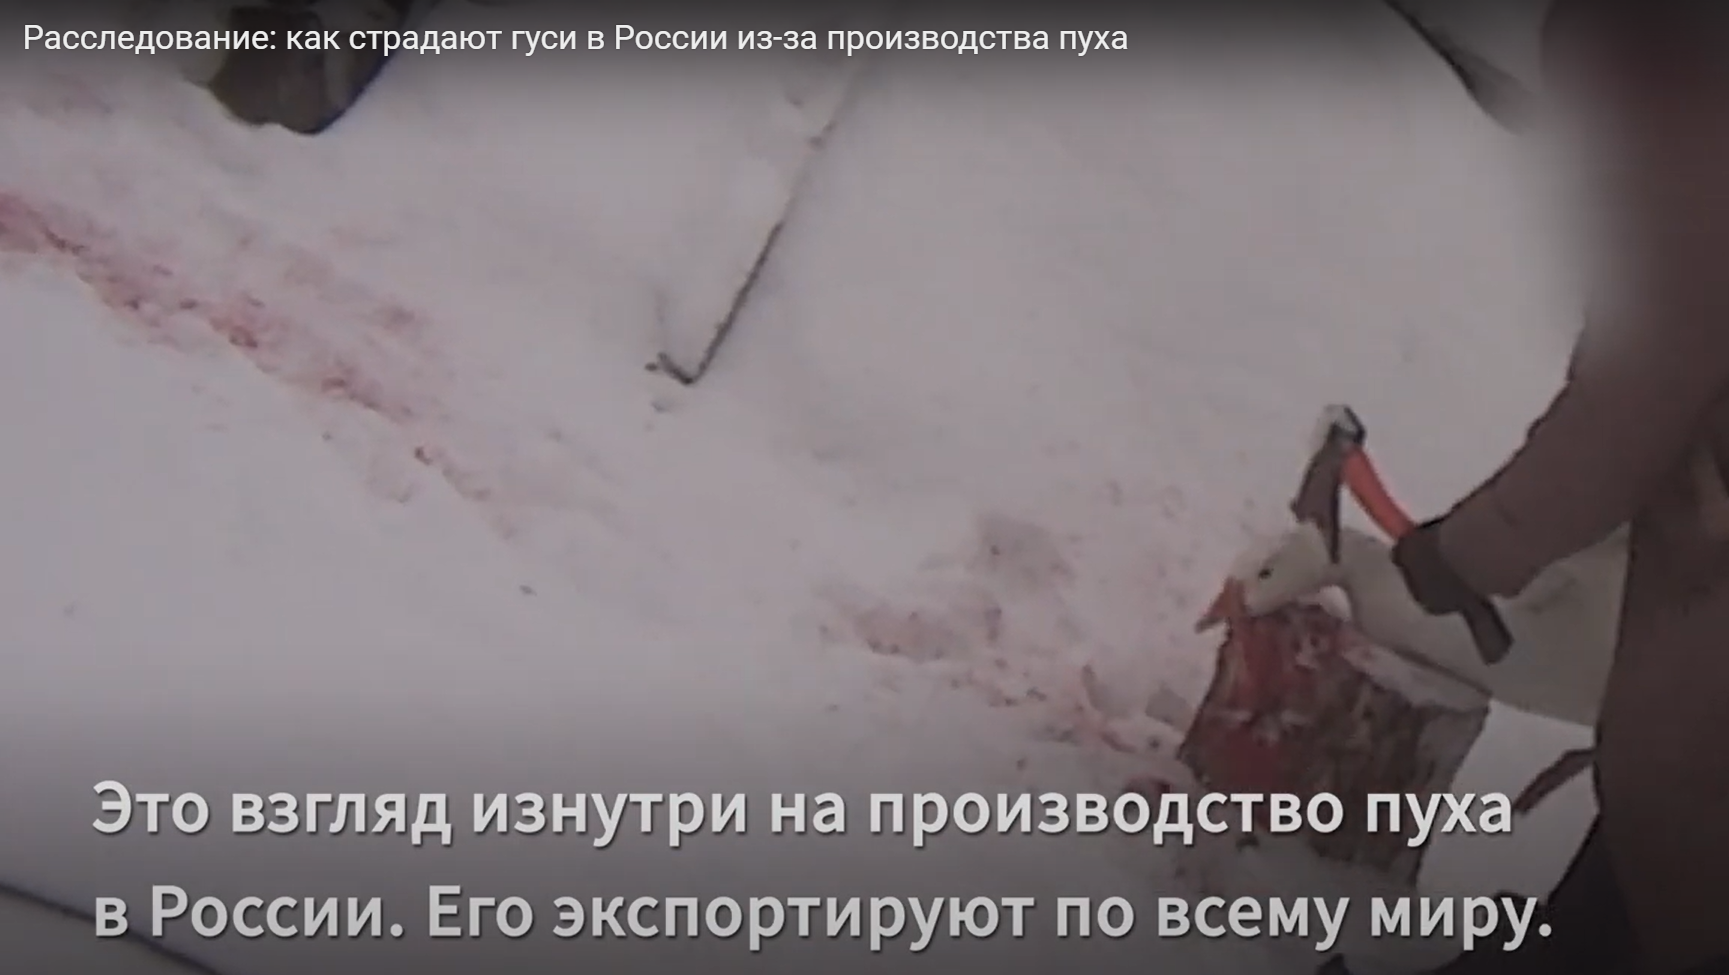 Кровавый пух. Как убивают гусей на российских фермах (видео)